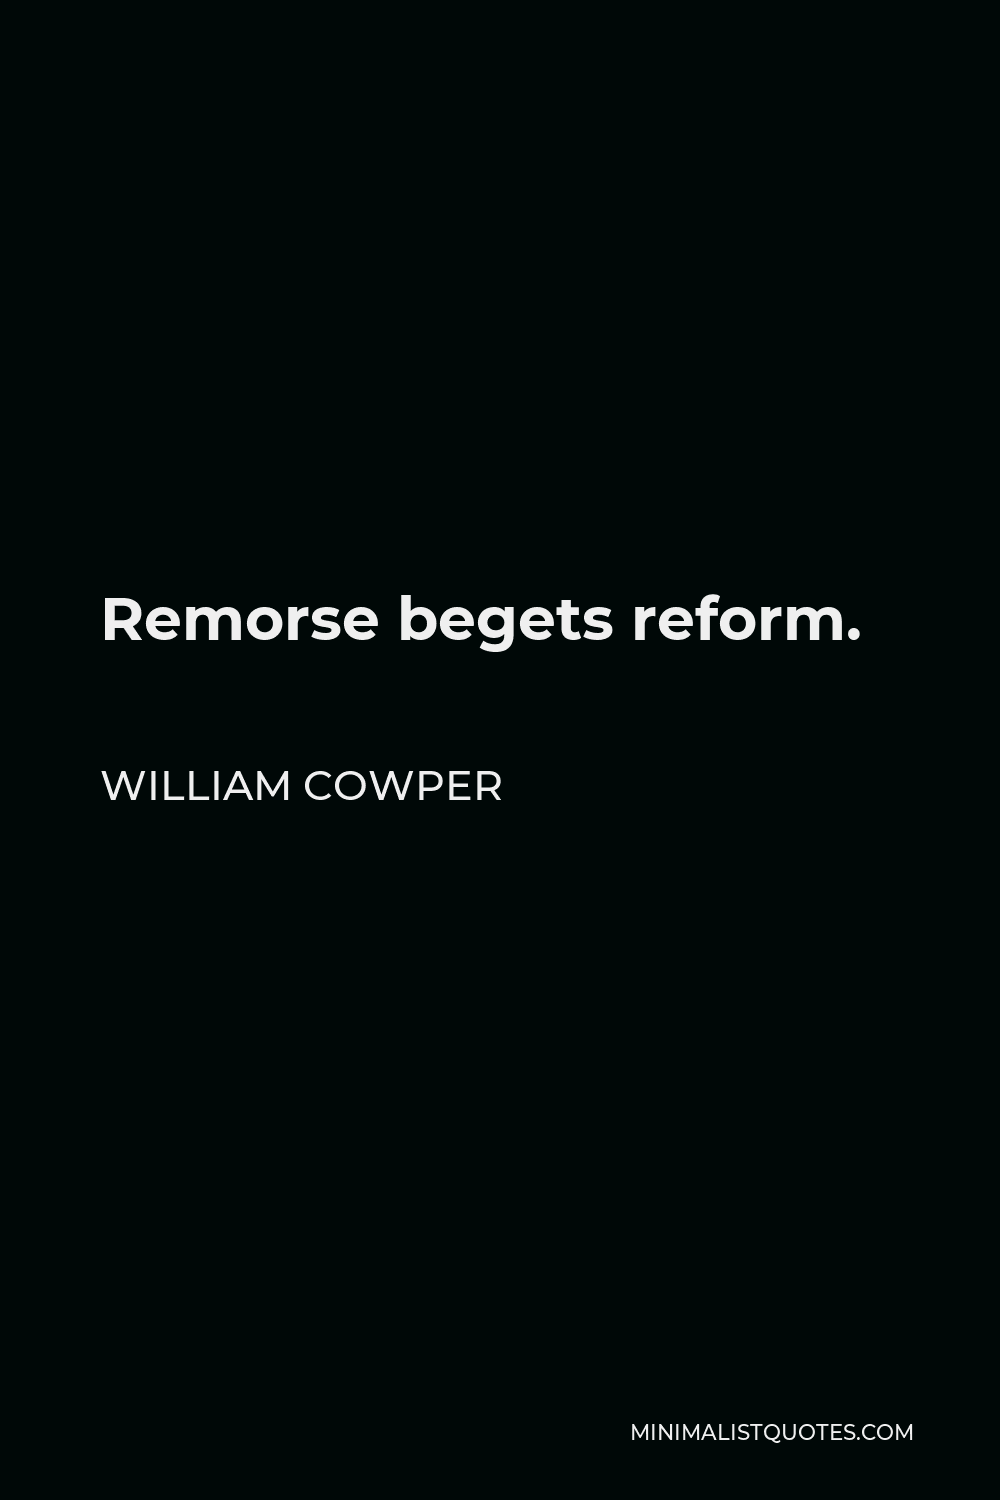 William Cowper Quote - Remorse begets reform.